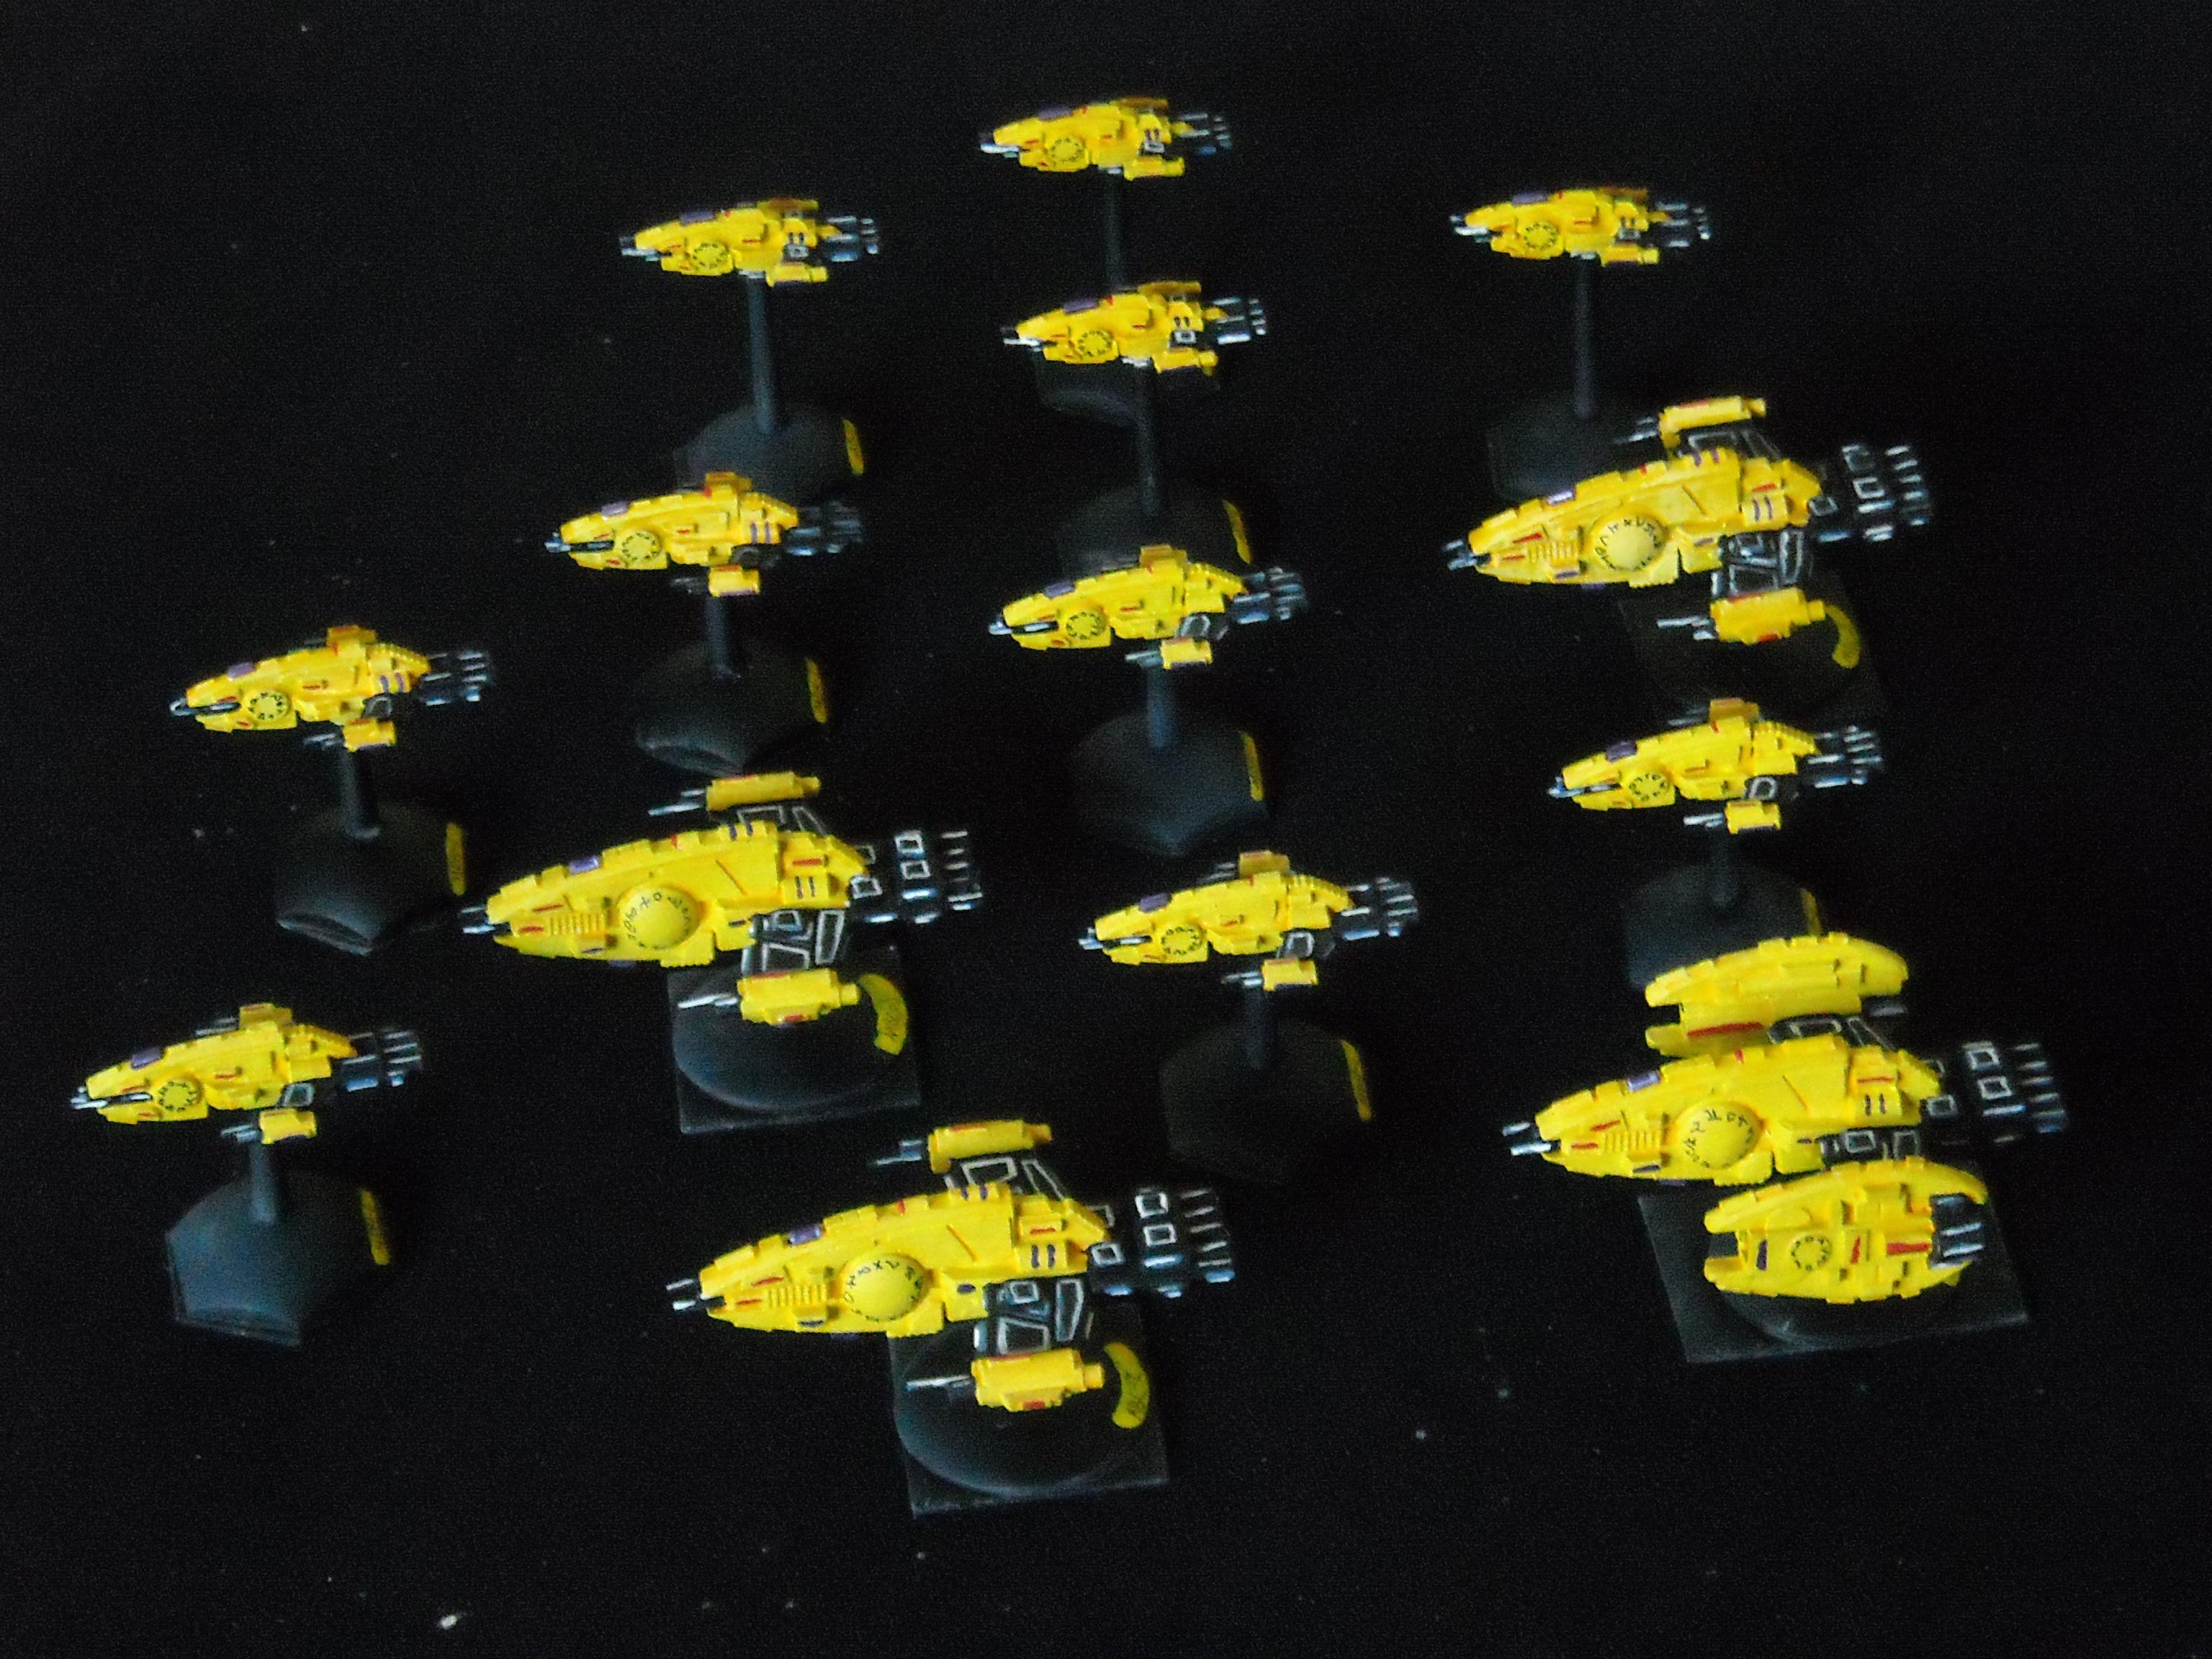 UCDR Fleet